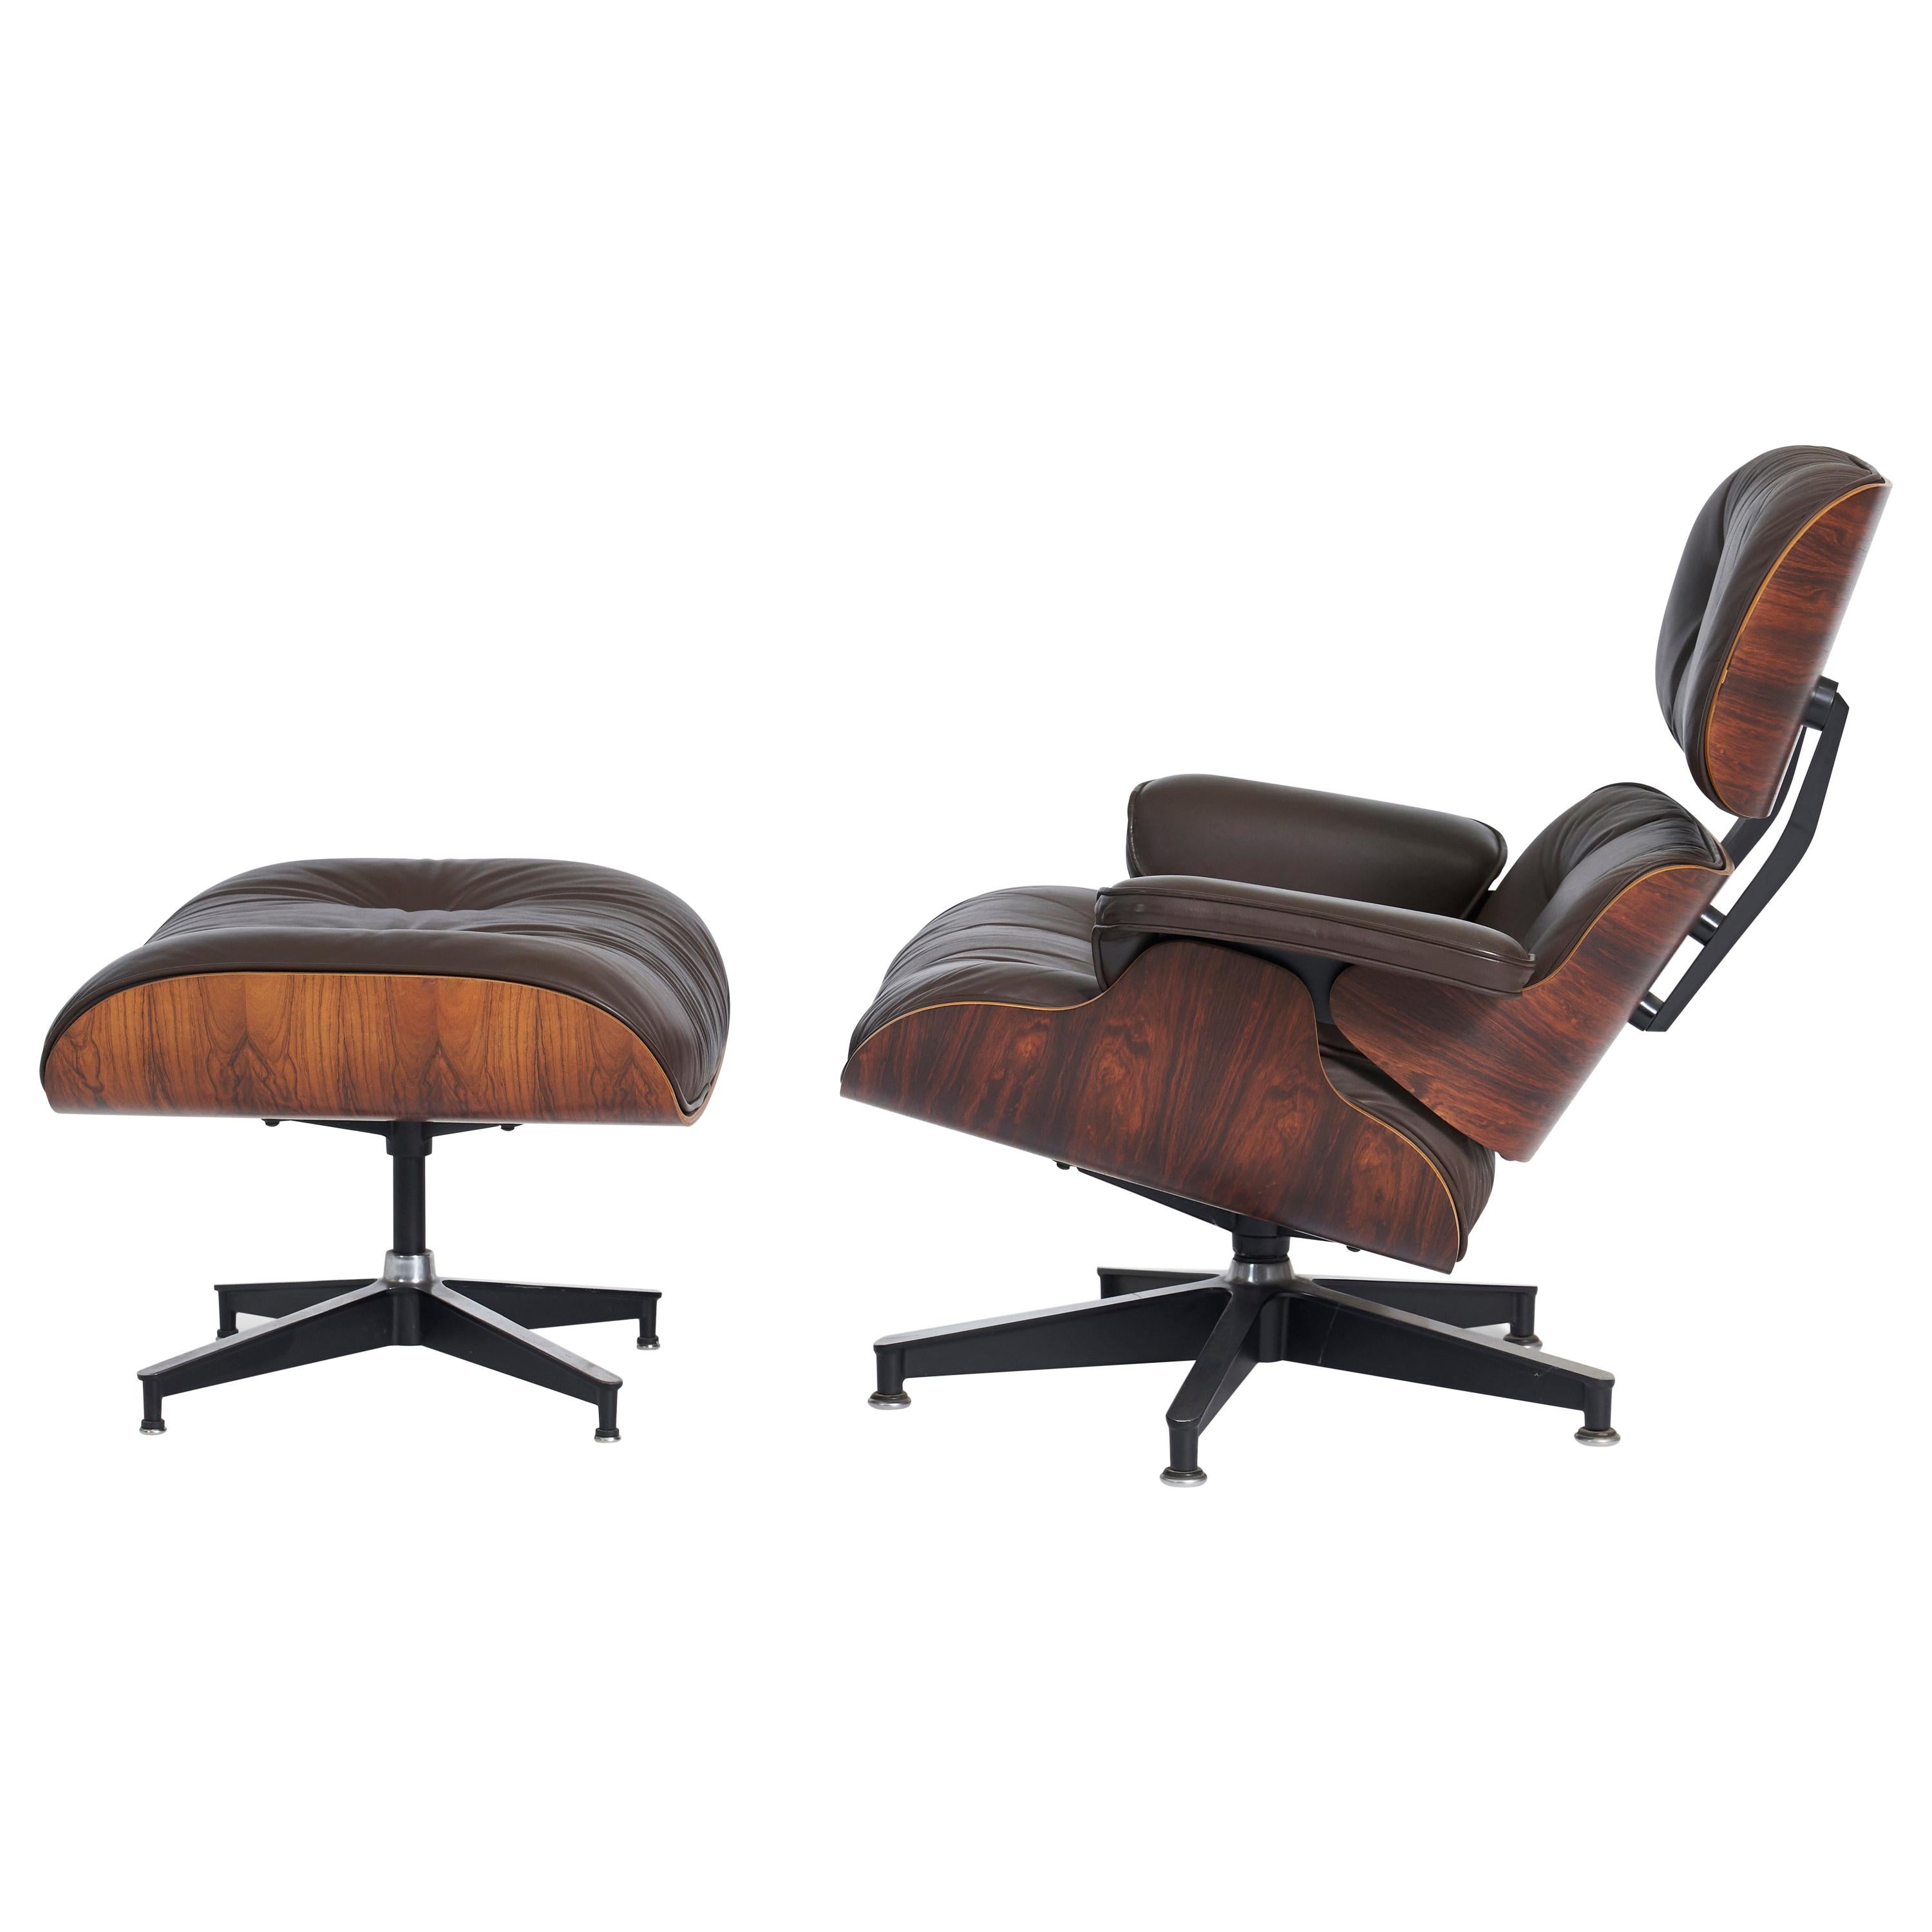 Rosewood Charles Eames Lounge Chair, Herman Miller, Dark Brown Leather